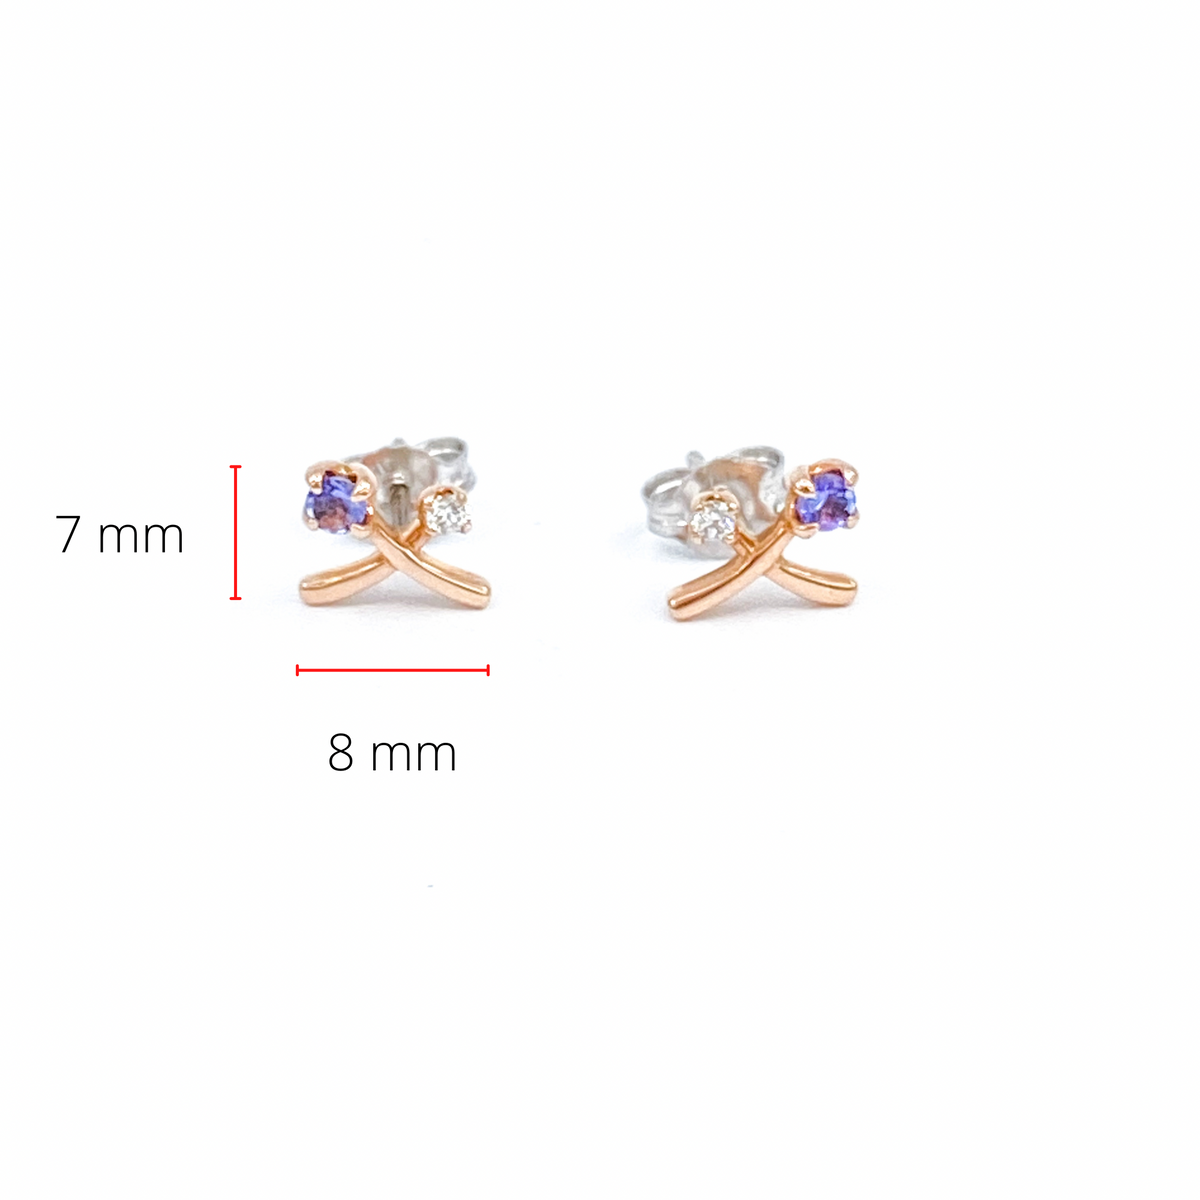 Pendientes de oro blanco y rosa de 14 quilates con tanzanita genuina de 0,16 quilates y diamantes canadienses de 0,05 quilates